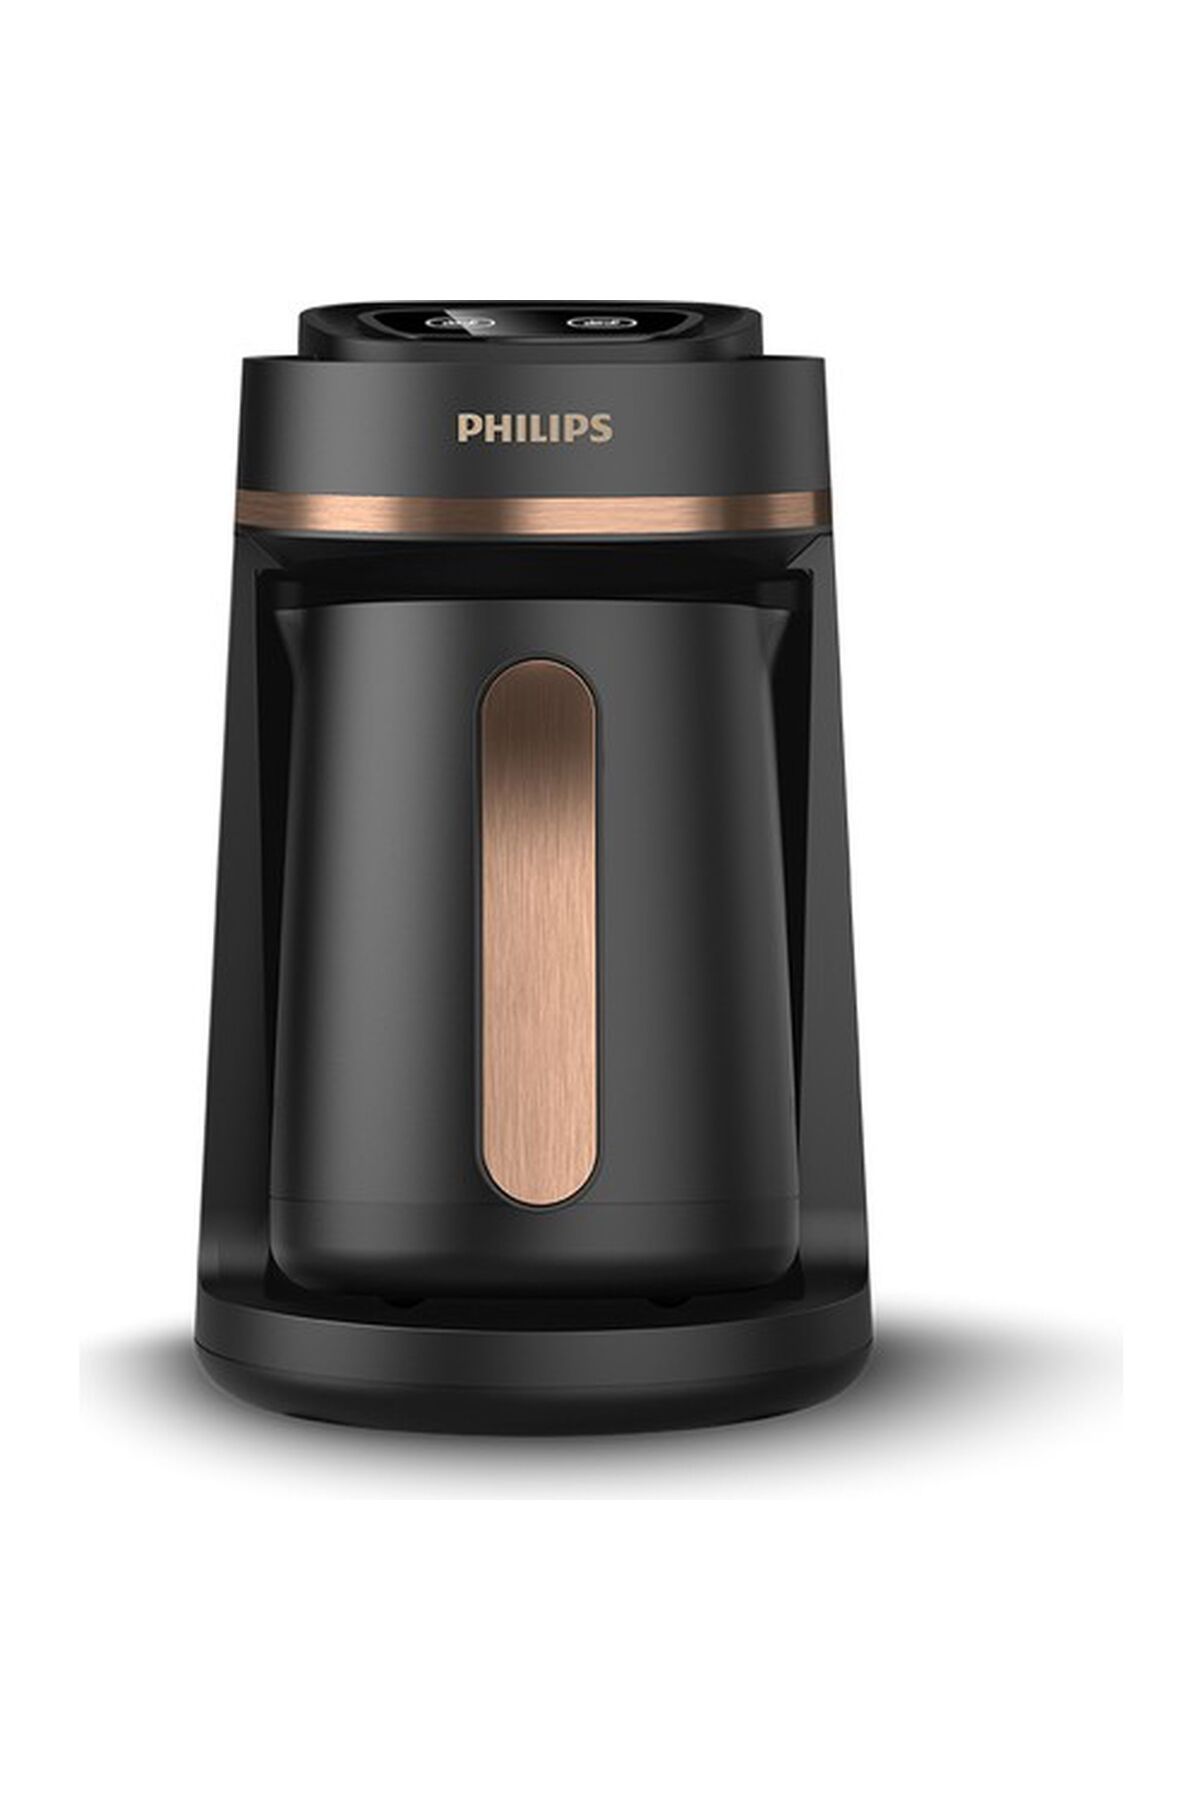 Philips Türk Kahvesi Makinesi